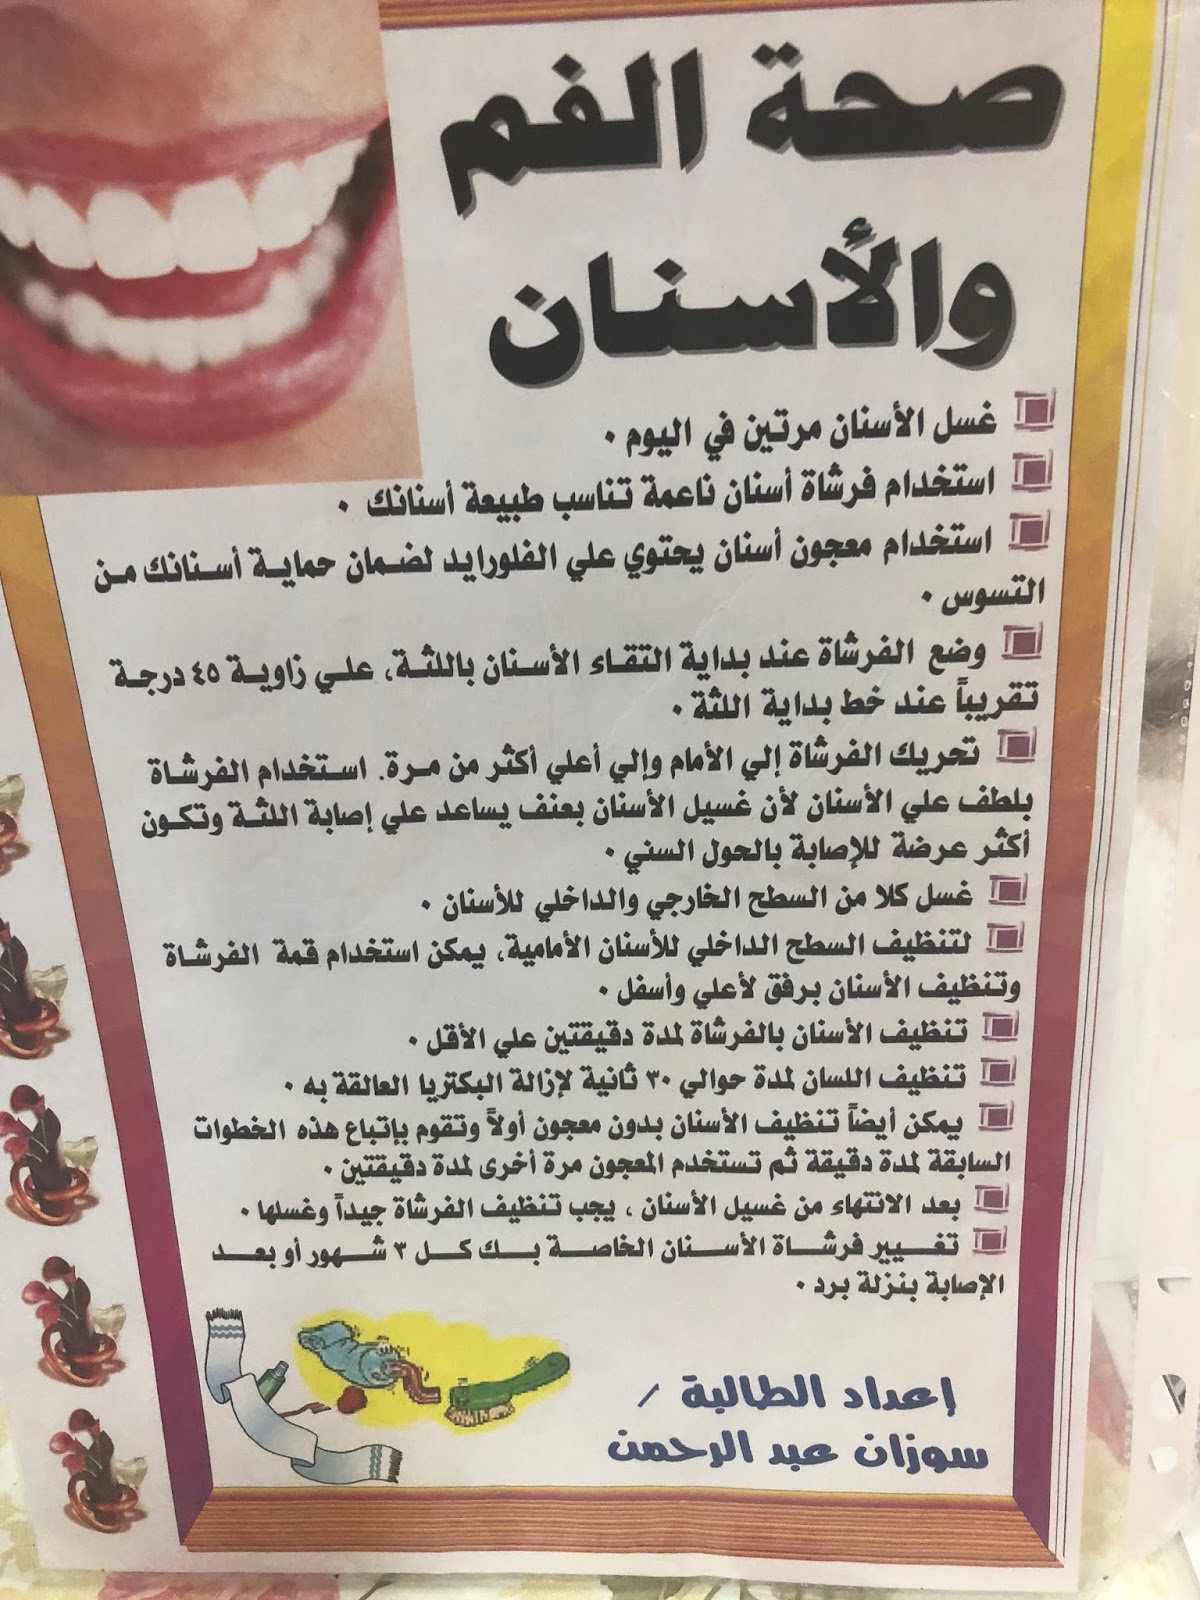 شعار الاسبوع الخليجي لصحة الفم والاسنان 2015 cpanel